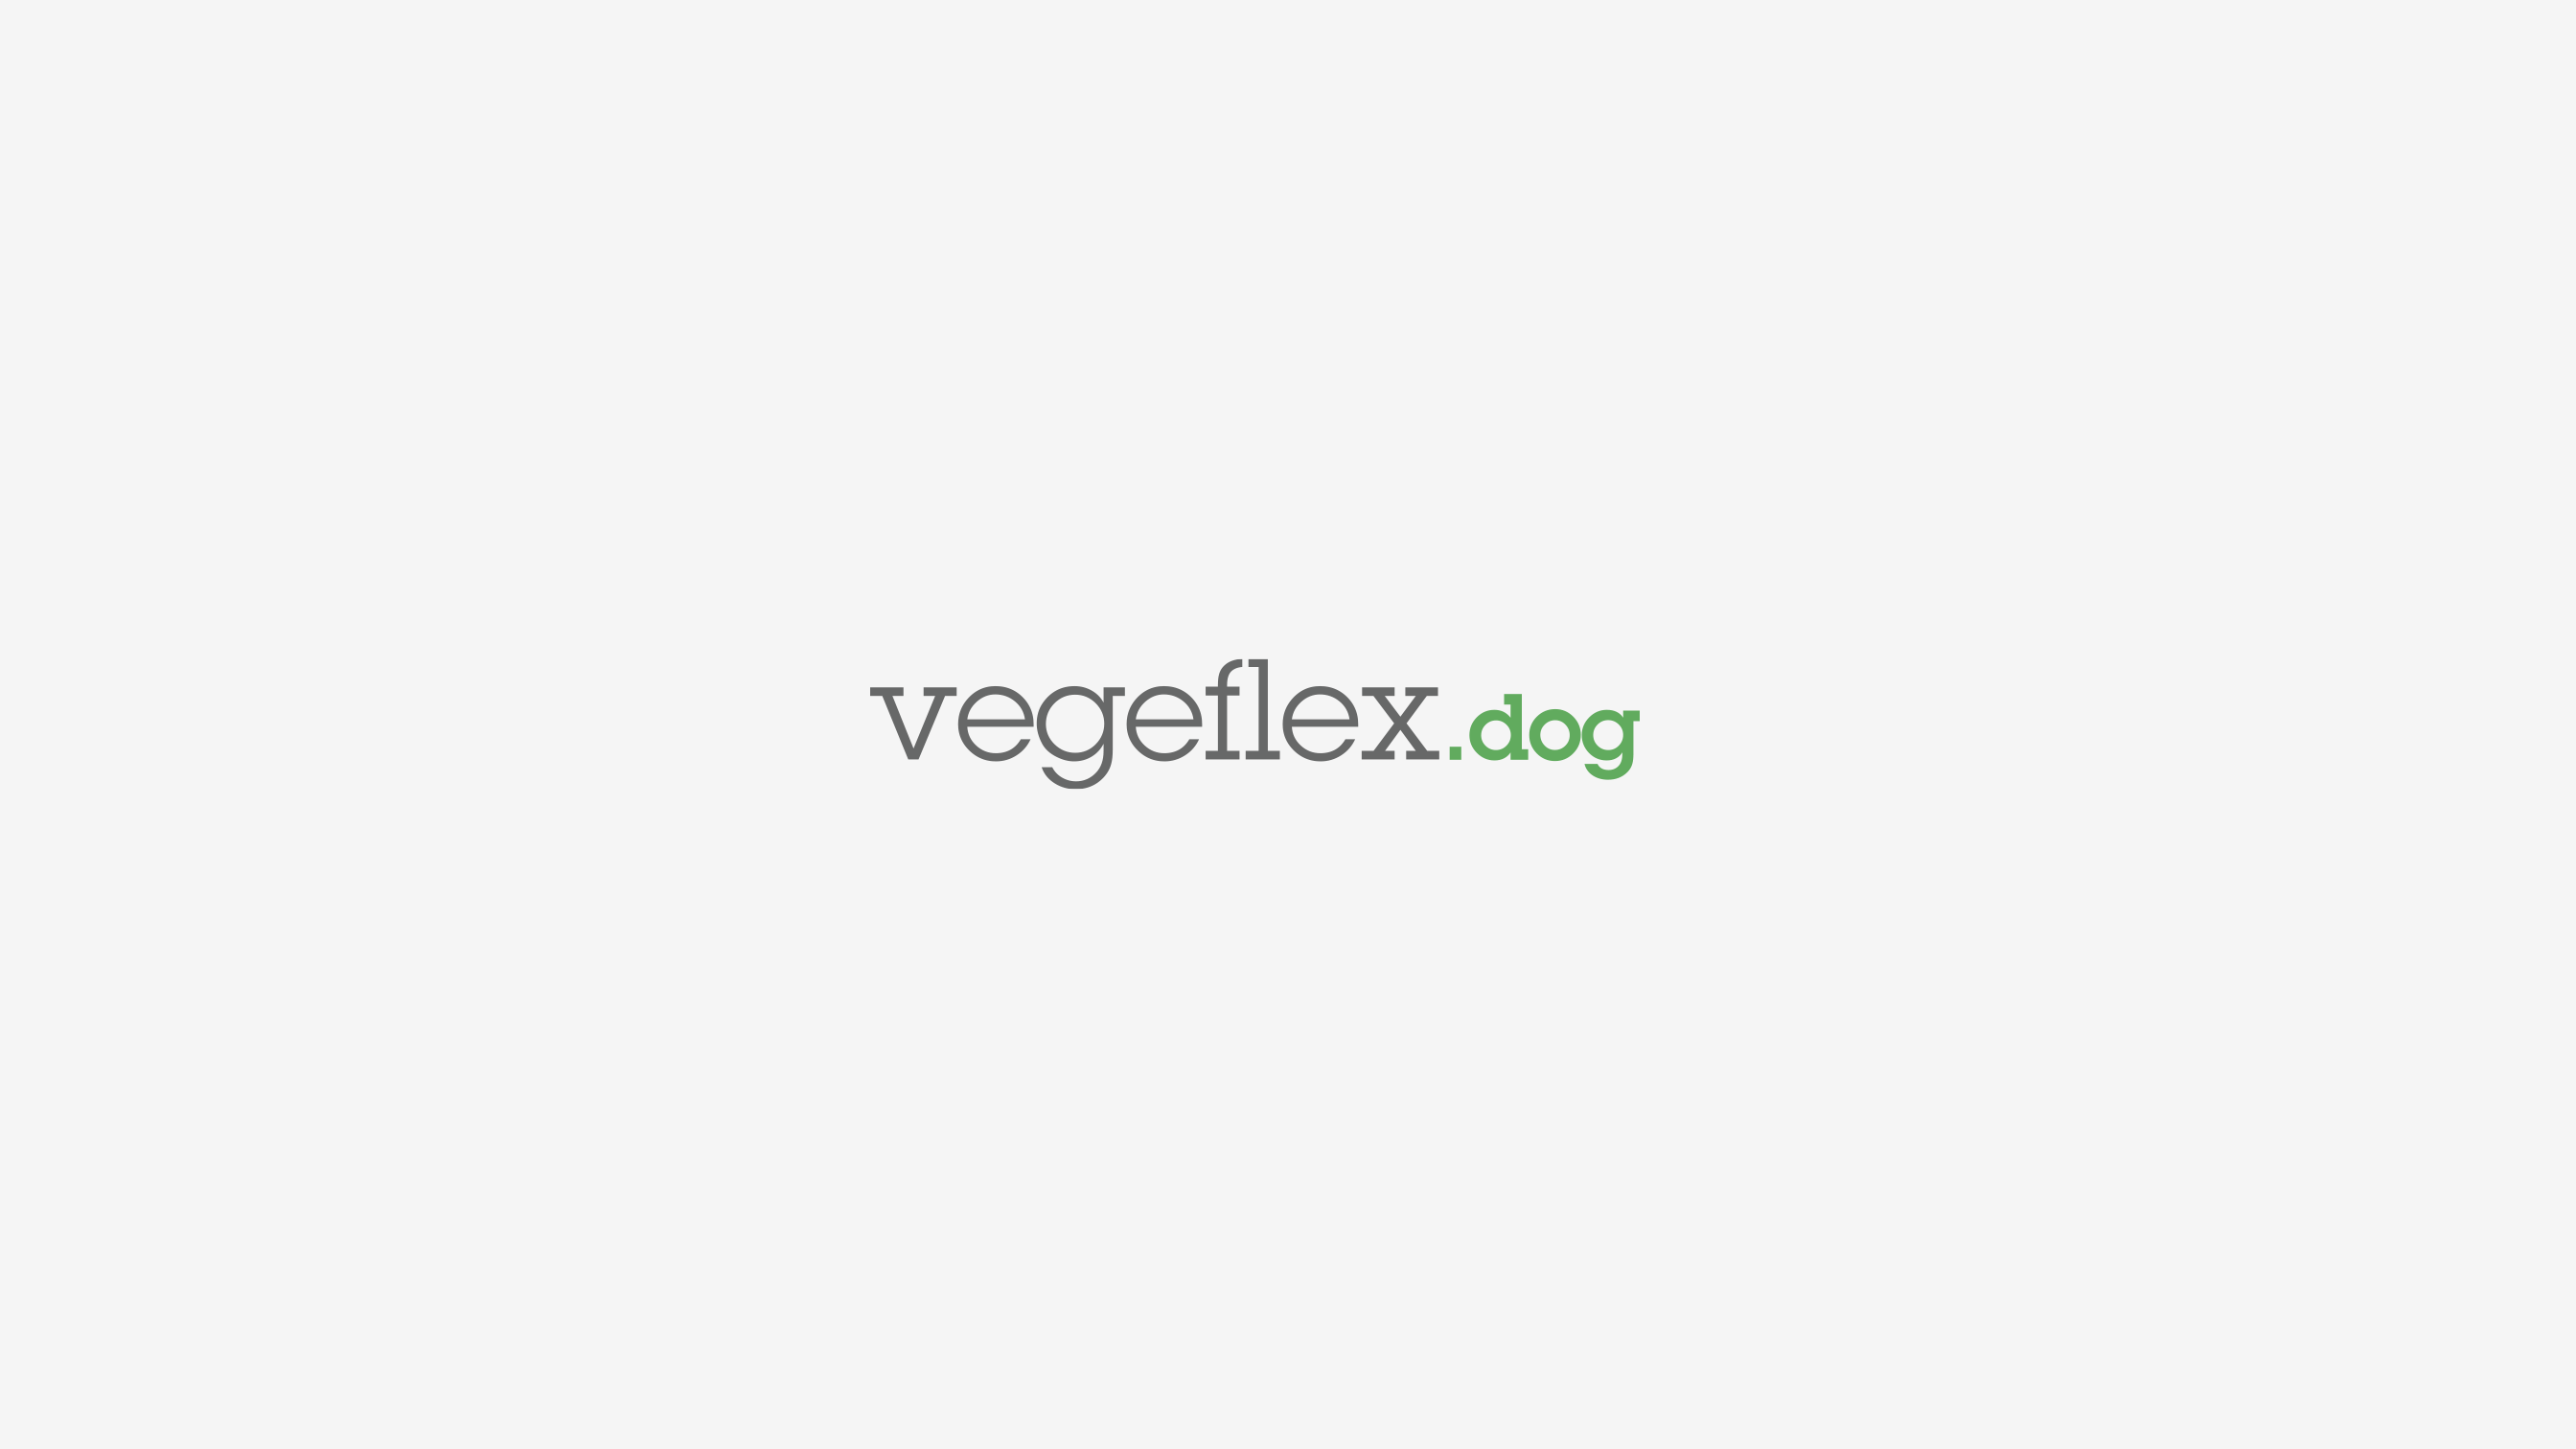 vegeflex-logotype-dog-pikteo